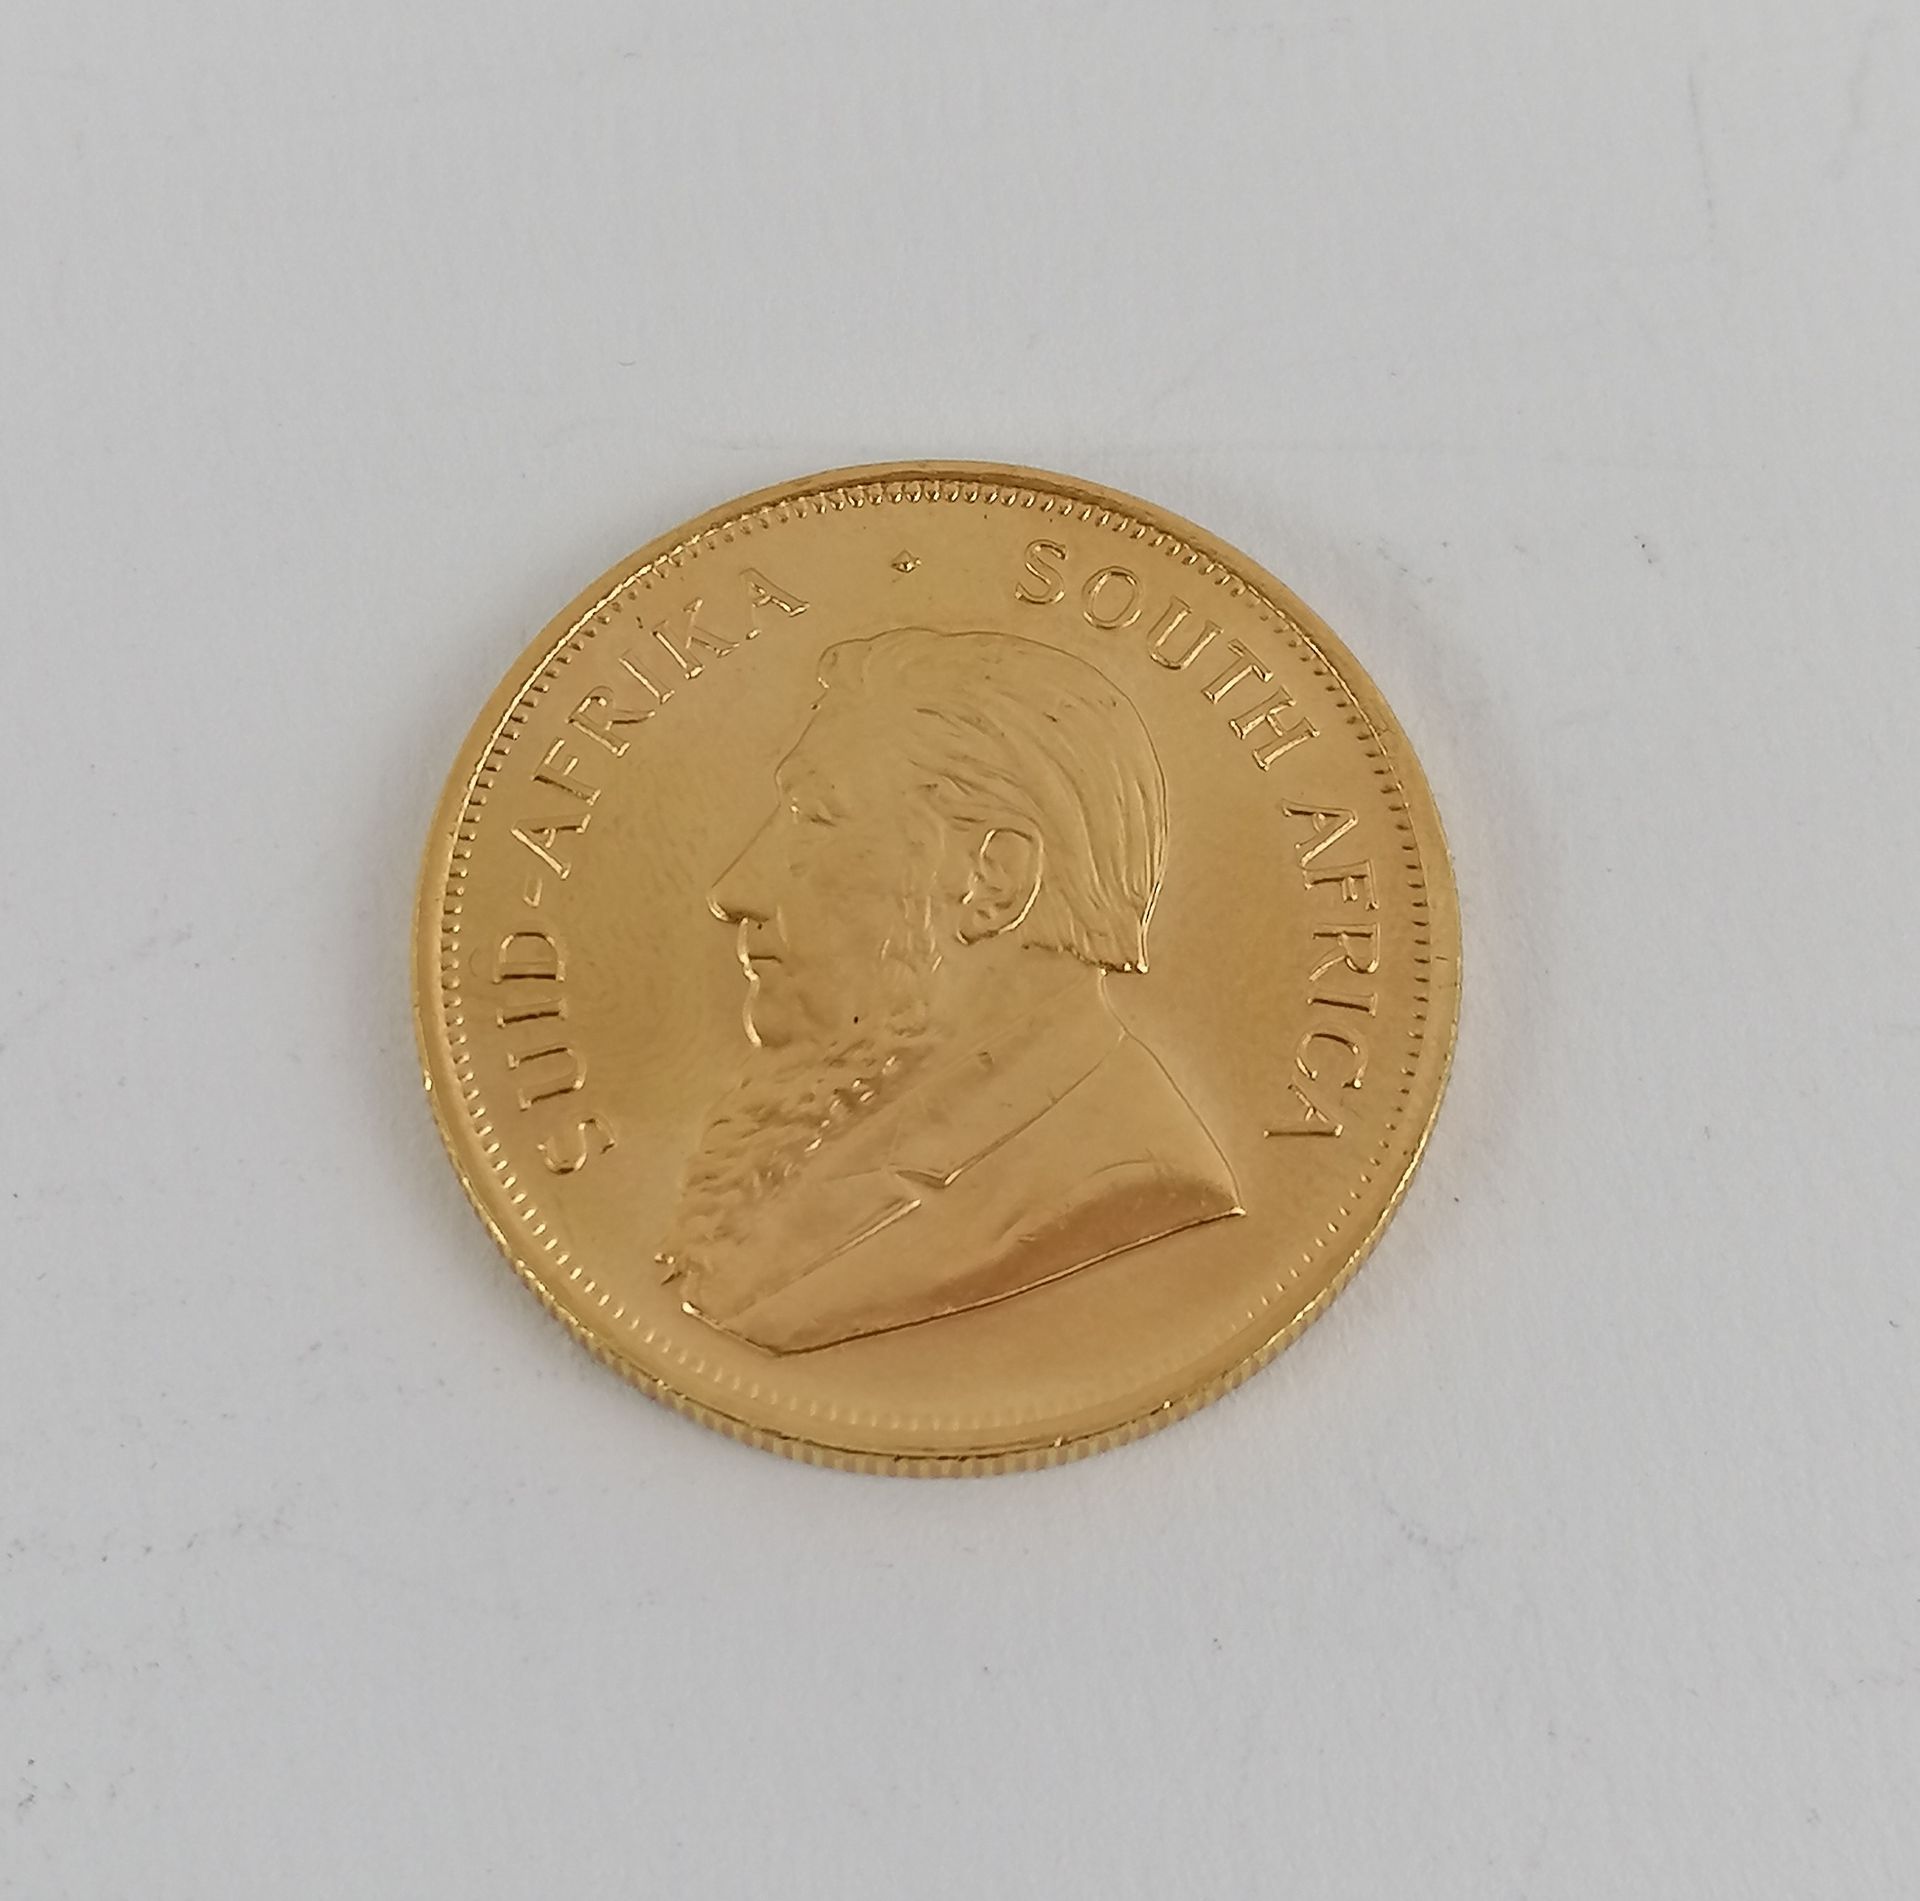 Null Eine Goldmünze Südafrika Kruggerand 1983.
Gewicht: 34 g